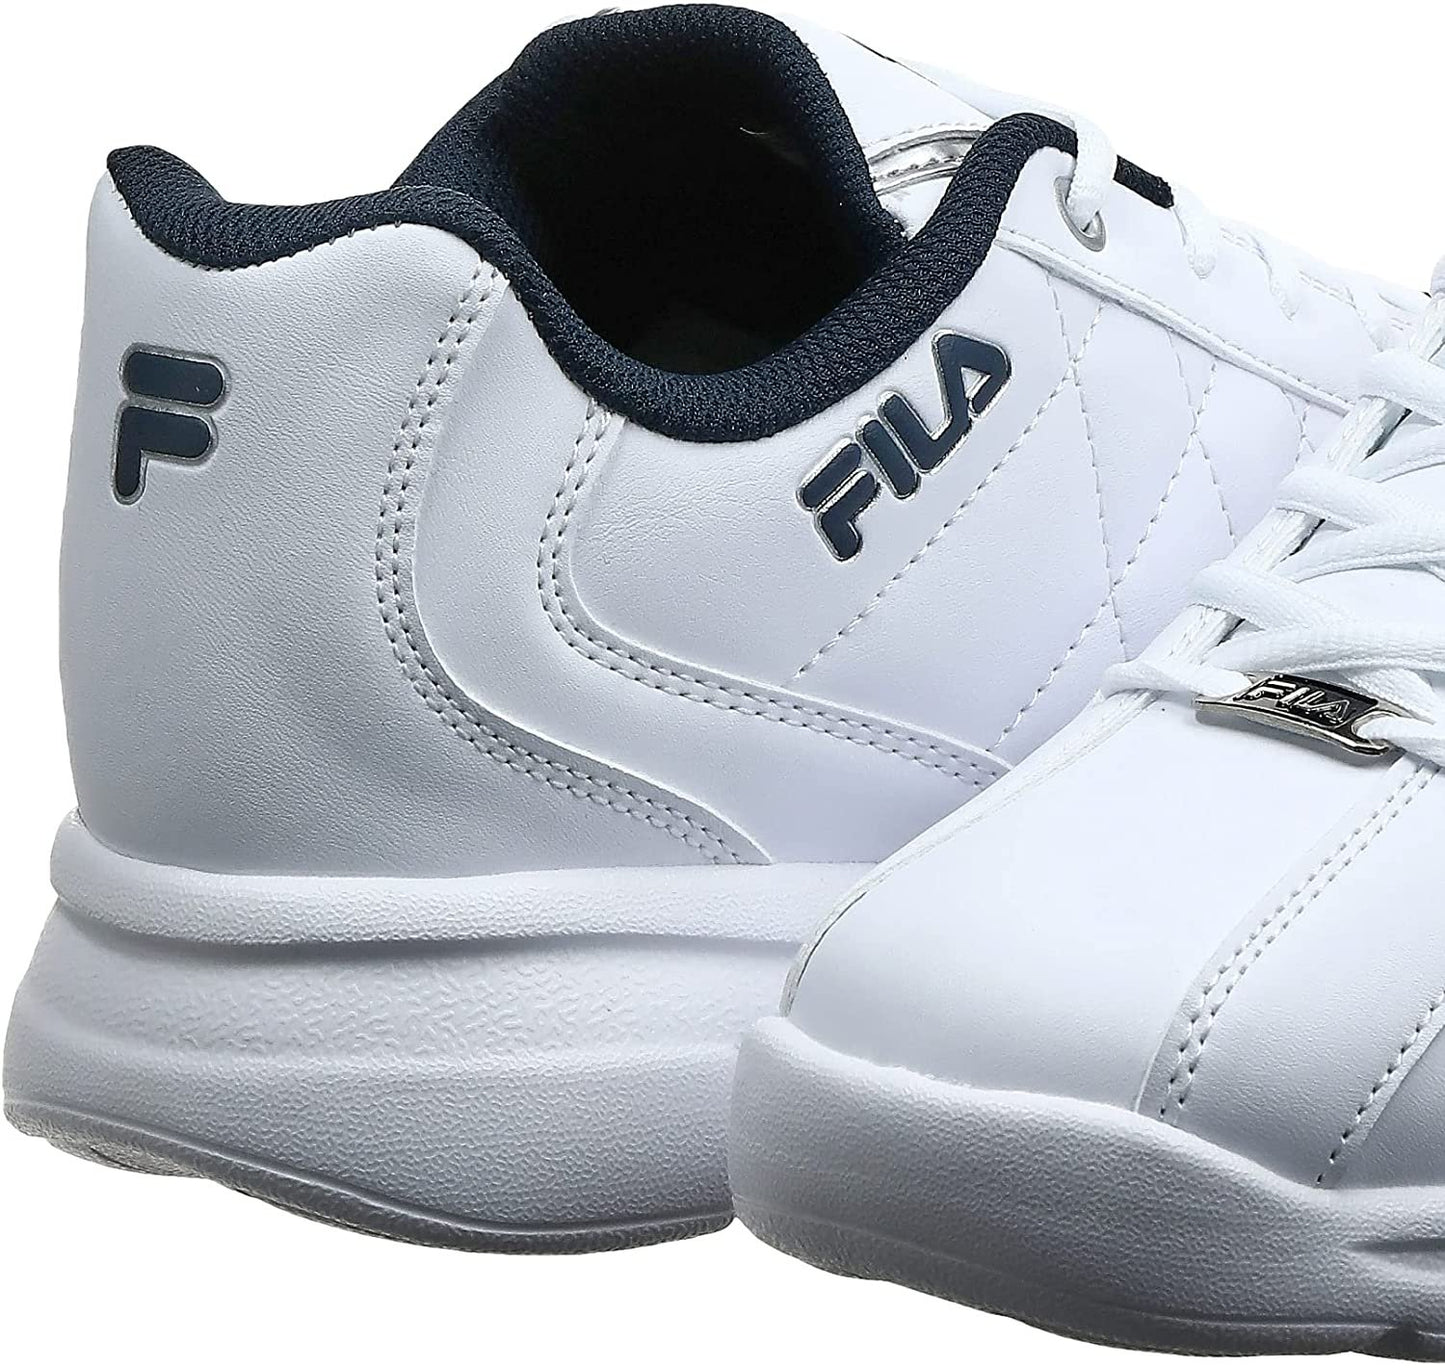 Fila Men's Fulcrum 3 Training Shoe